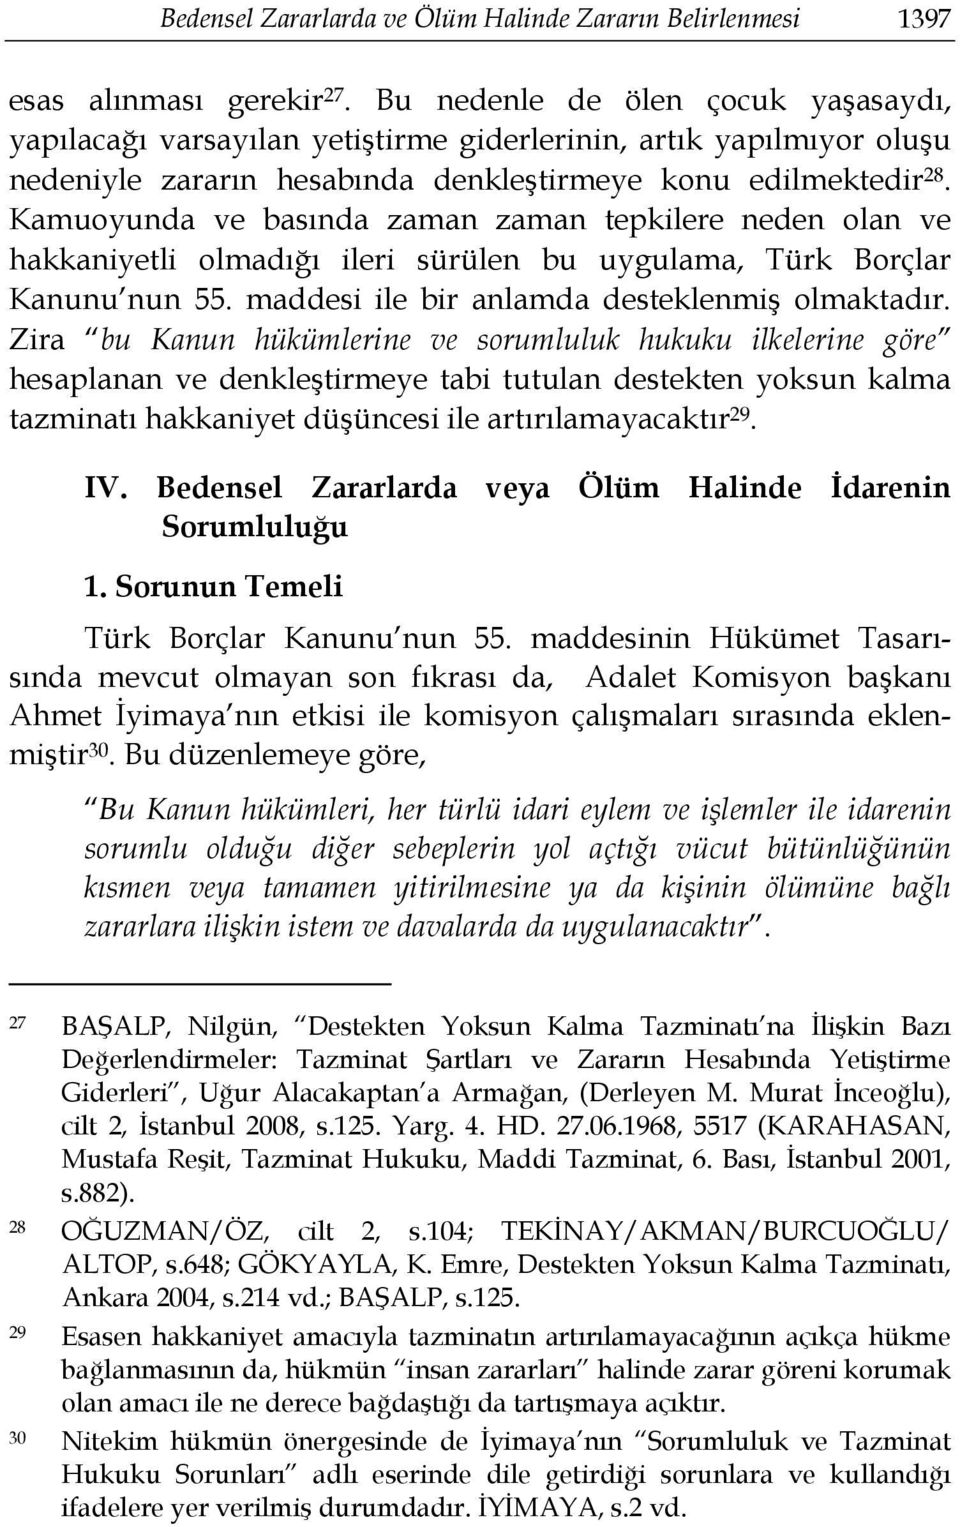 Kamuoyunda ve basında zaman zaman tepkilere neden olan ve hakkaniyetli olmadığı ileri sürülen bu uygulama, Türk Borçlar Kanunu nun 55. maddesi ile bir anlamda desteklenmiş olmaktadır.